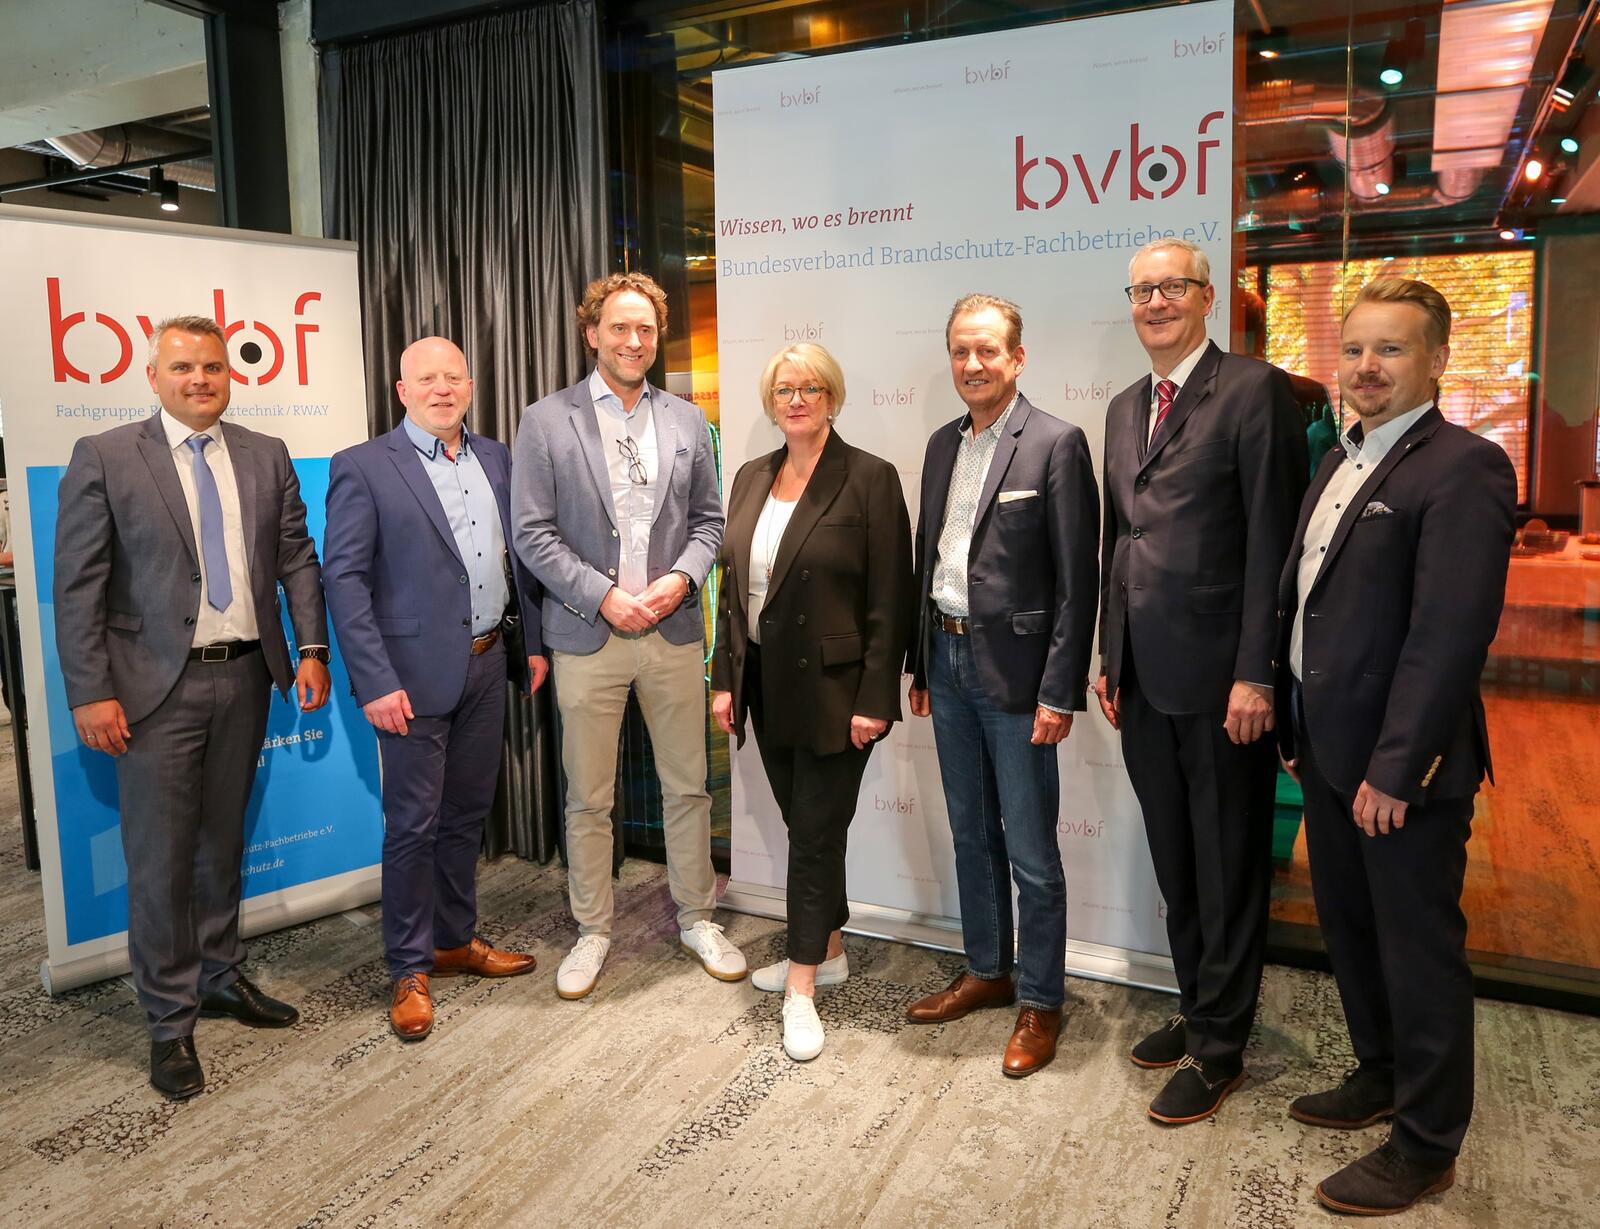 Der BVBF hat Vorstand und Beirat gewählt (v.l.n.r.): Alexander Heinzl, Rainer W. Klünder, Carsten Dubberke, Nicole Maack, Wulf Statz, René Schümann, Marcel Kübler.